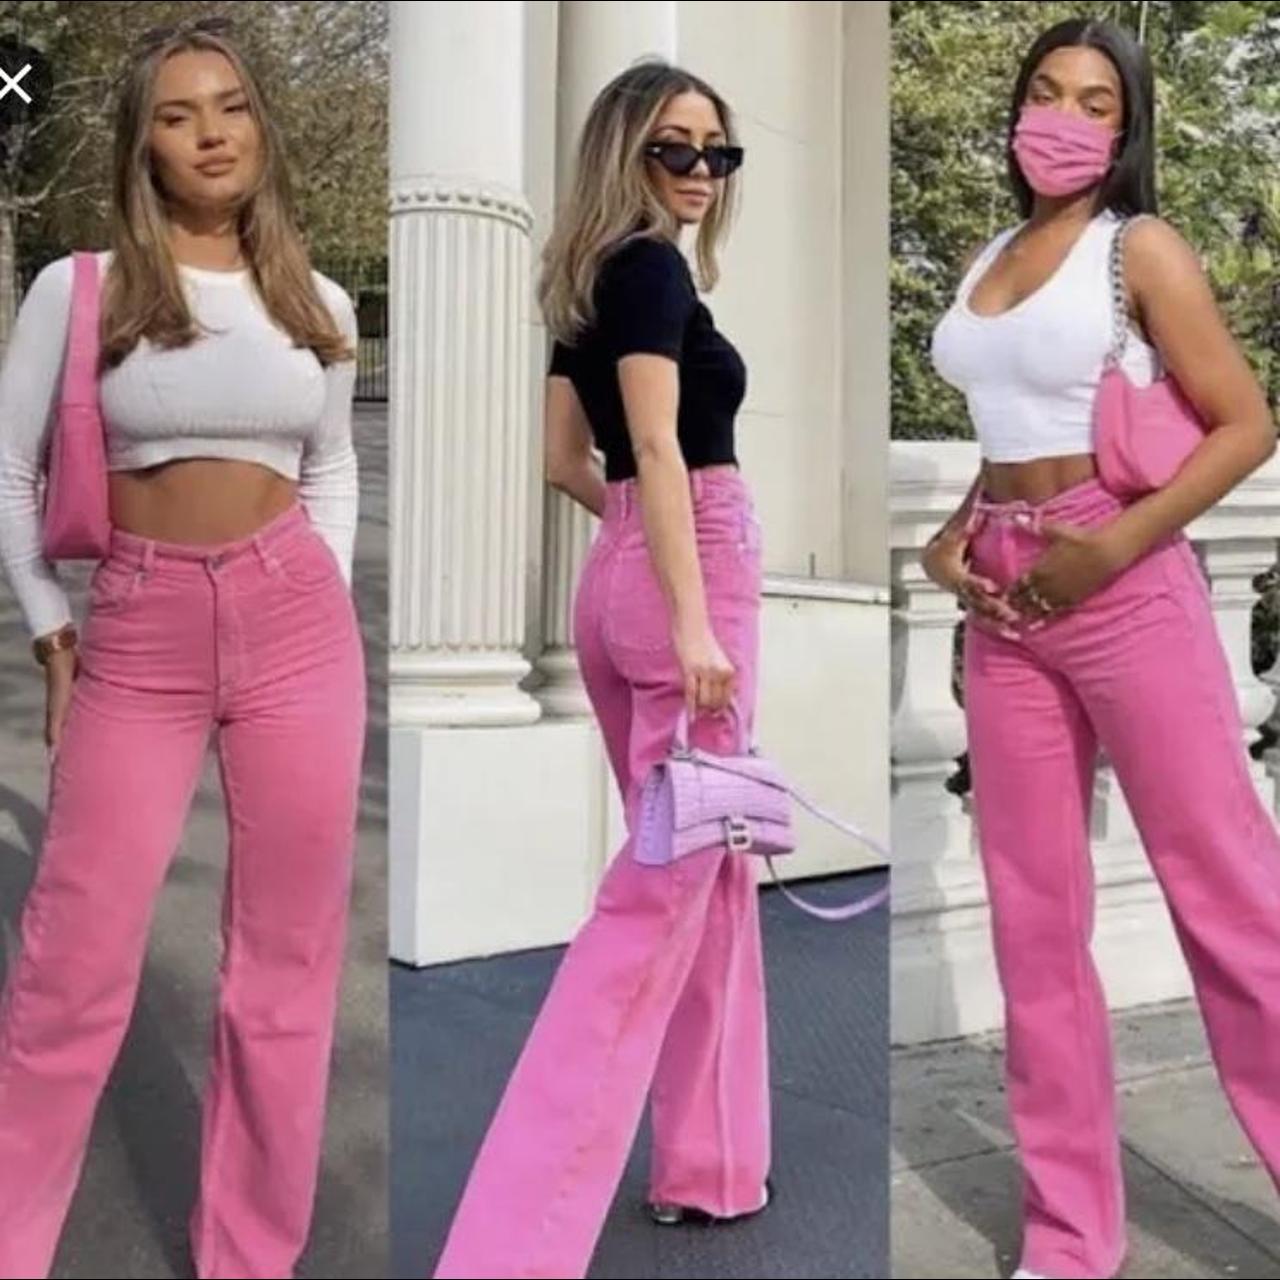 Zara womens pink high waist trousers. Never worn. - Depop